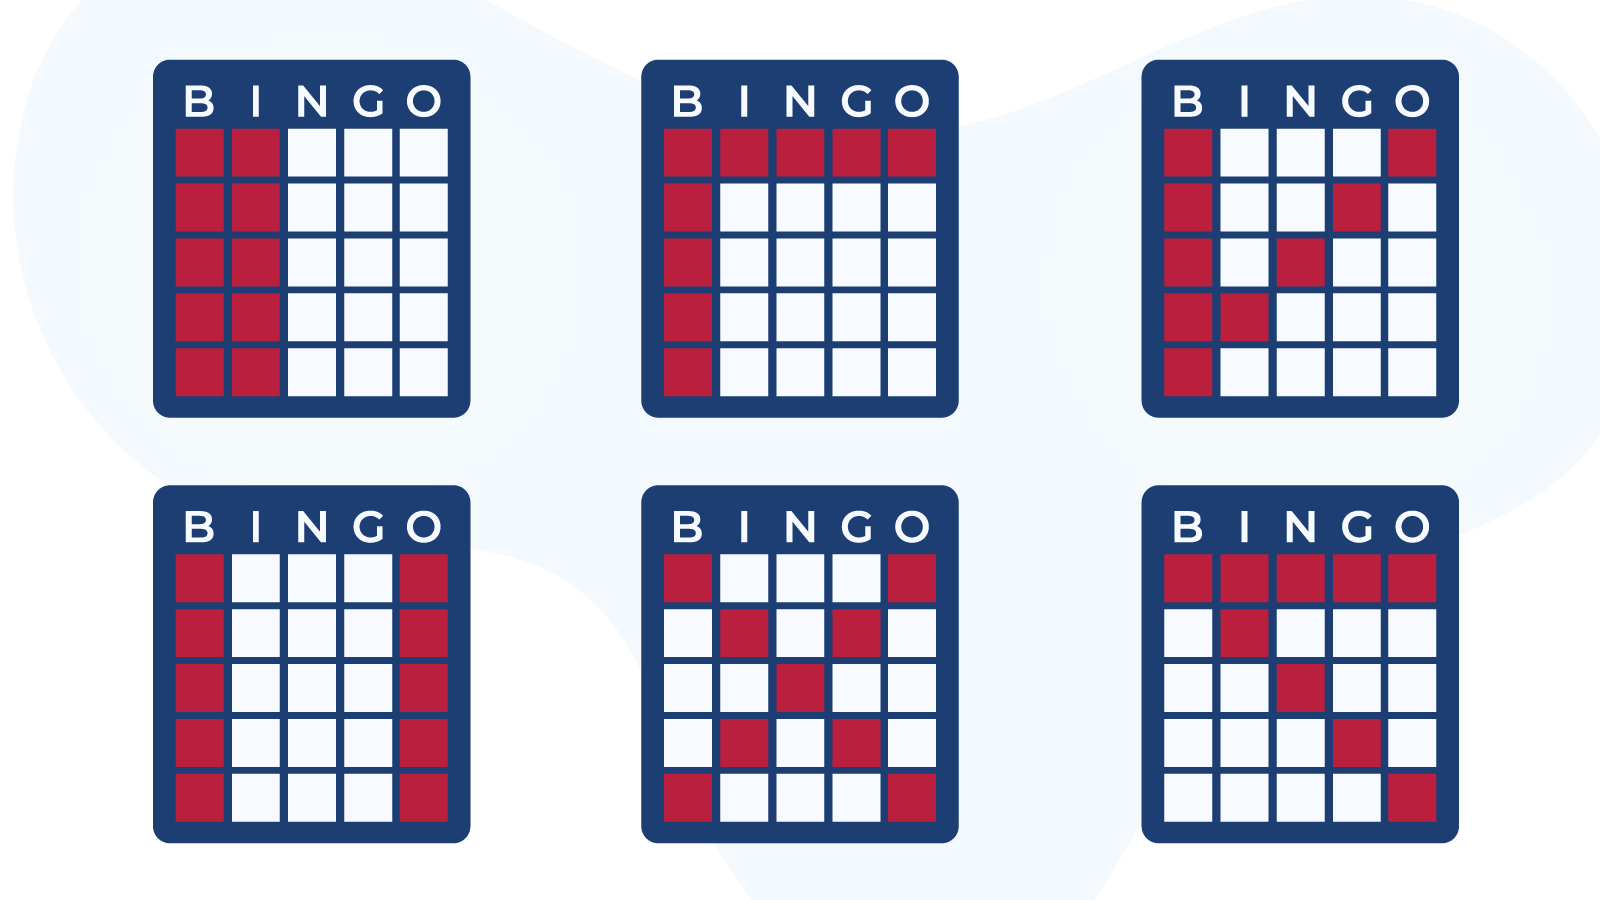 Bingo Here s how it should look